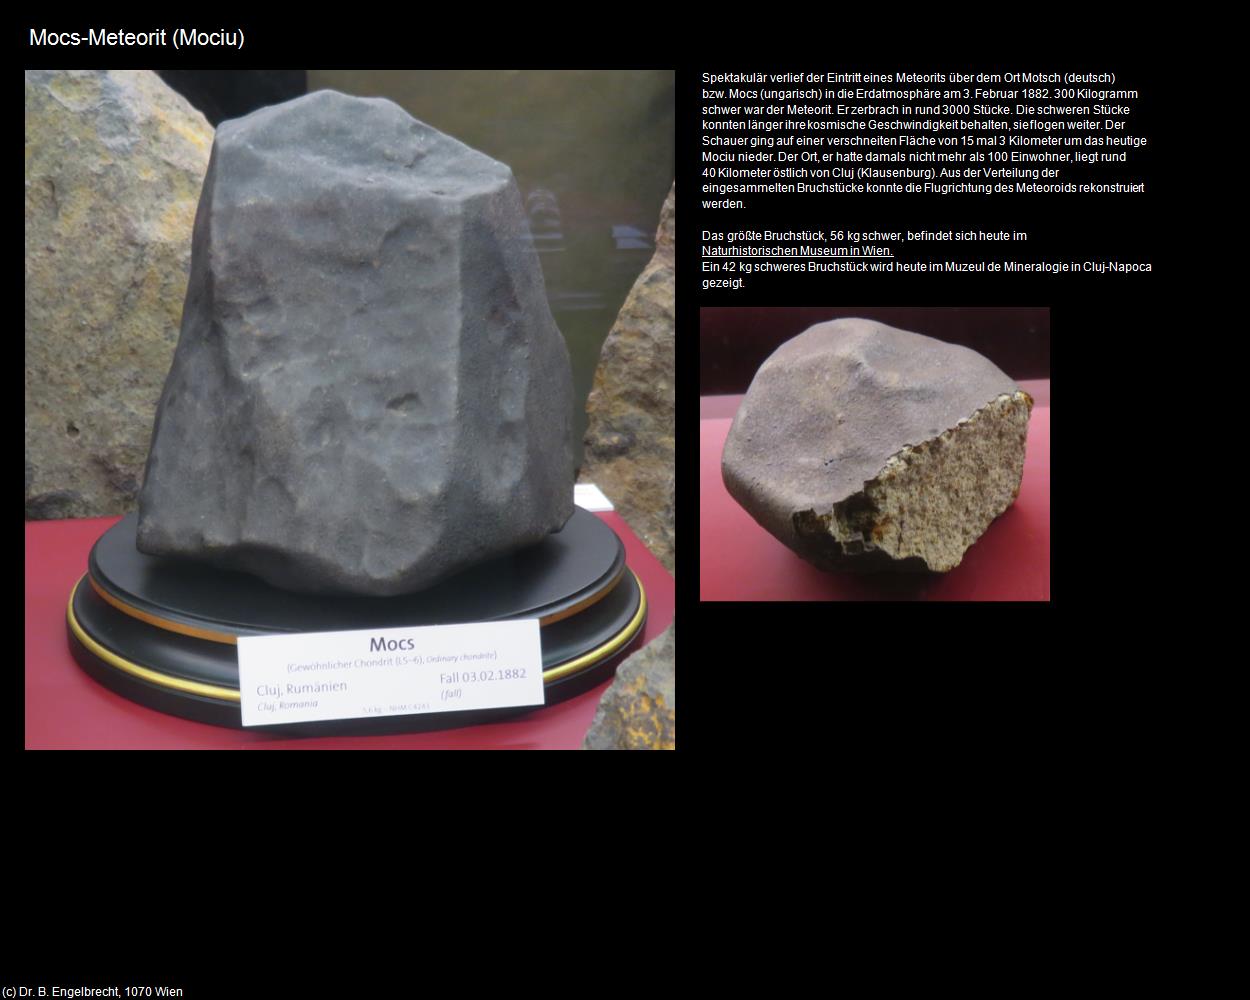 Mocs-Meteorit (Mociu) in RUMÄNIEN(c)B.Engelbrecht